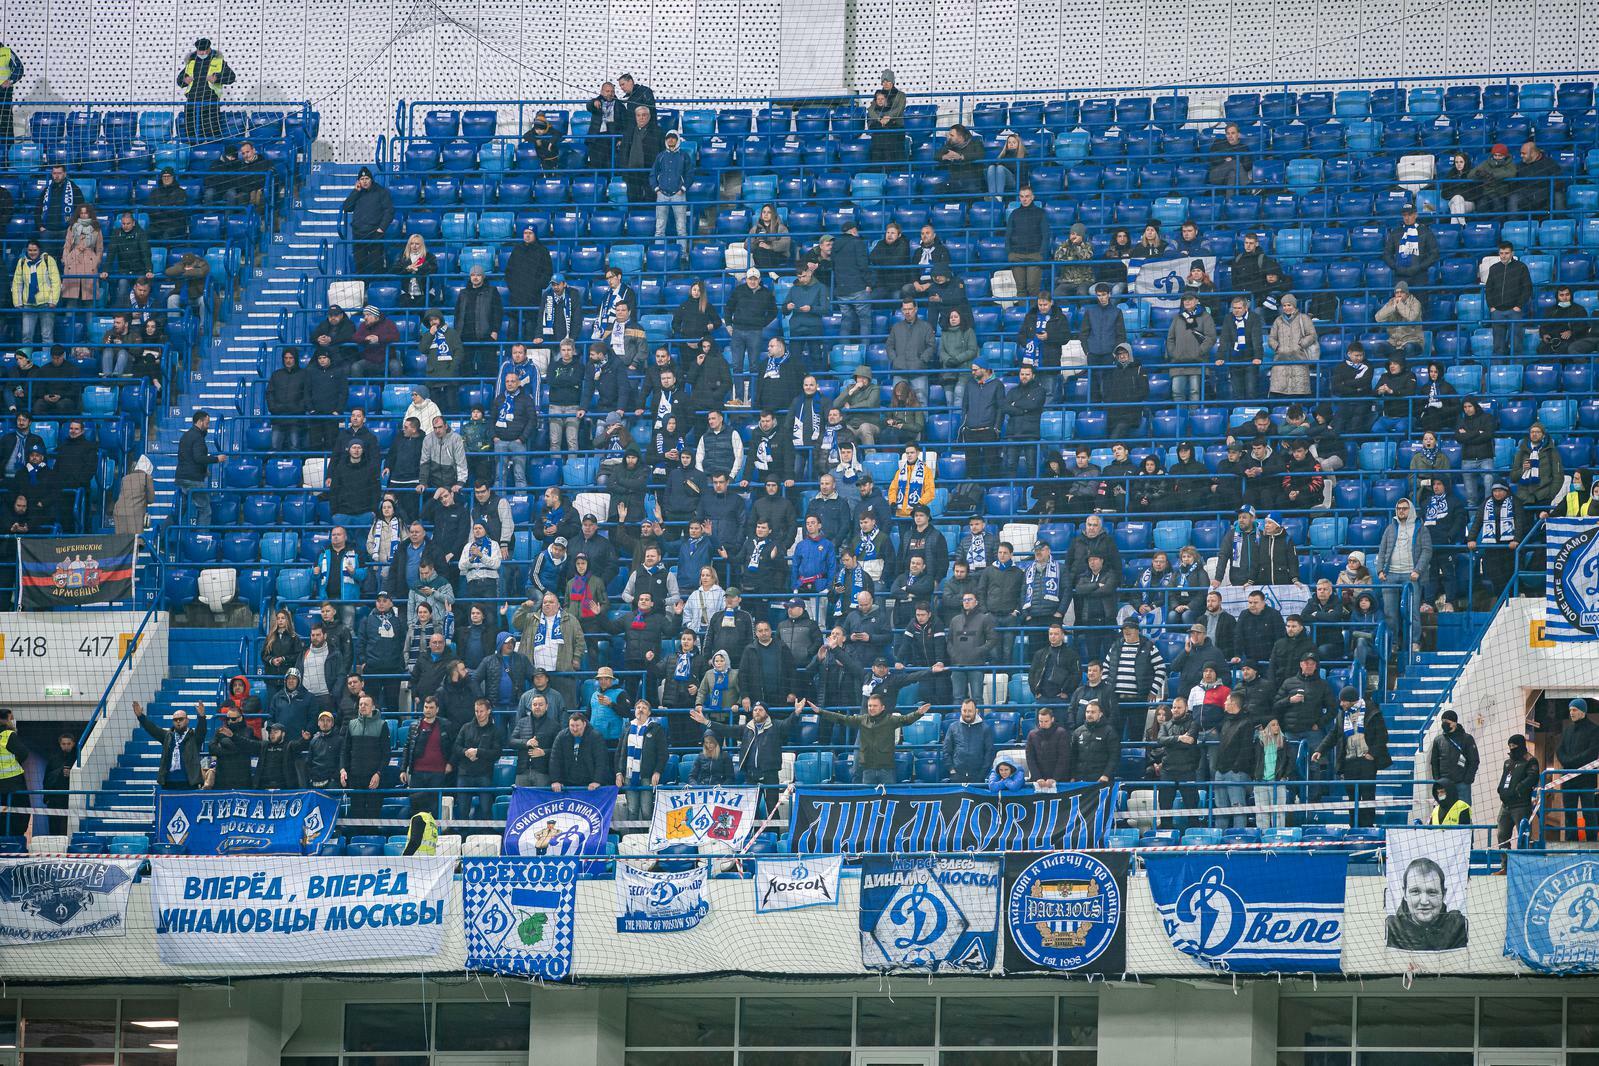 Noticias del FC "Dynamo" Moscú | Información para los aficionados que van a apoyar al equipo en Kaliningrado. Sitio oficial del club Dynamo.